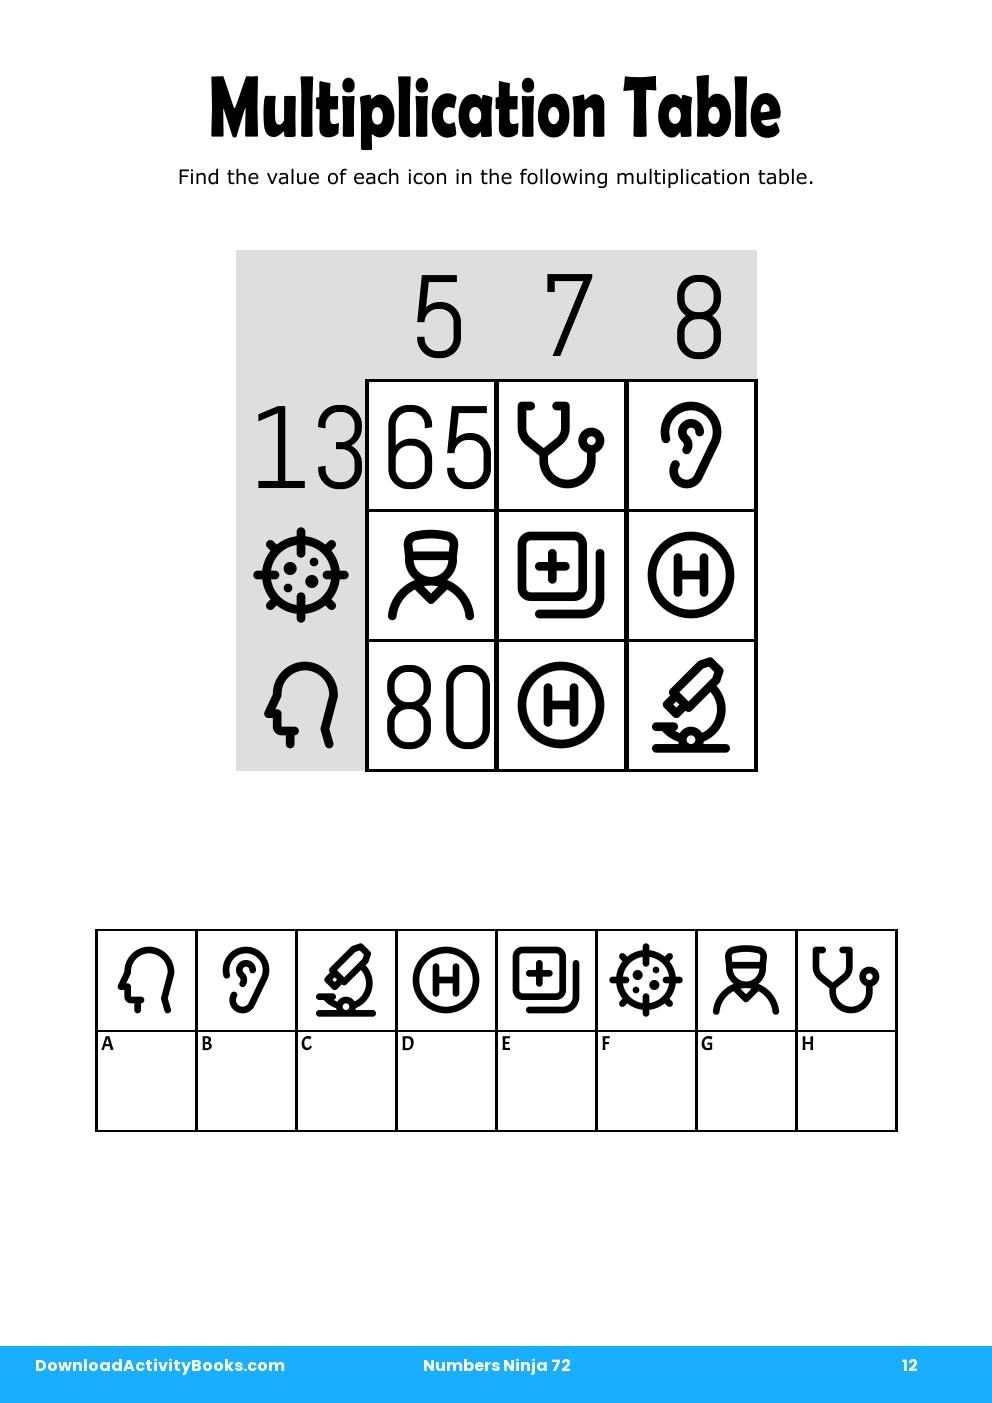 Multiplication Table in Numbers Ninja 72